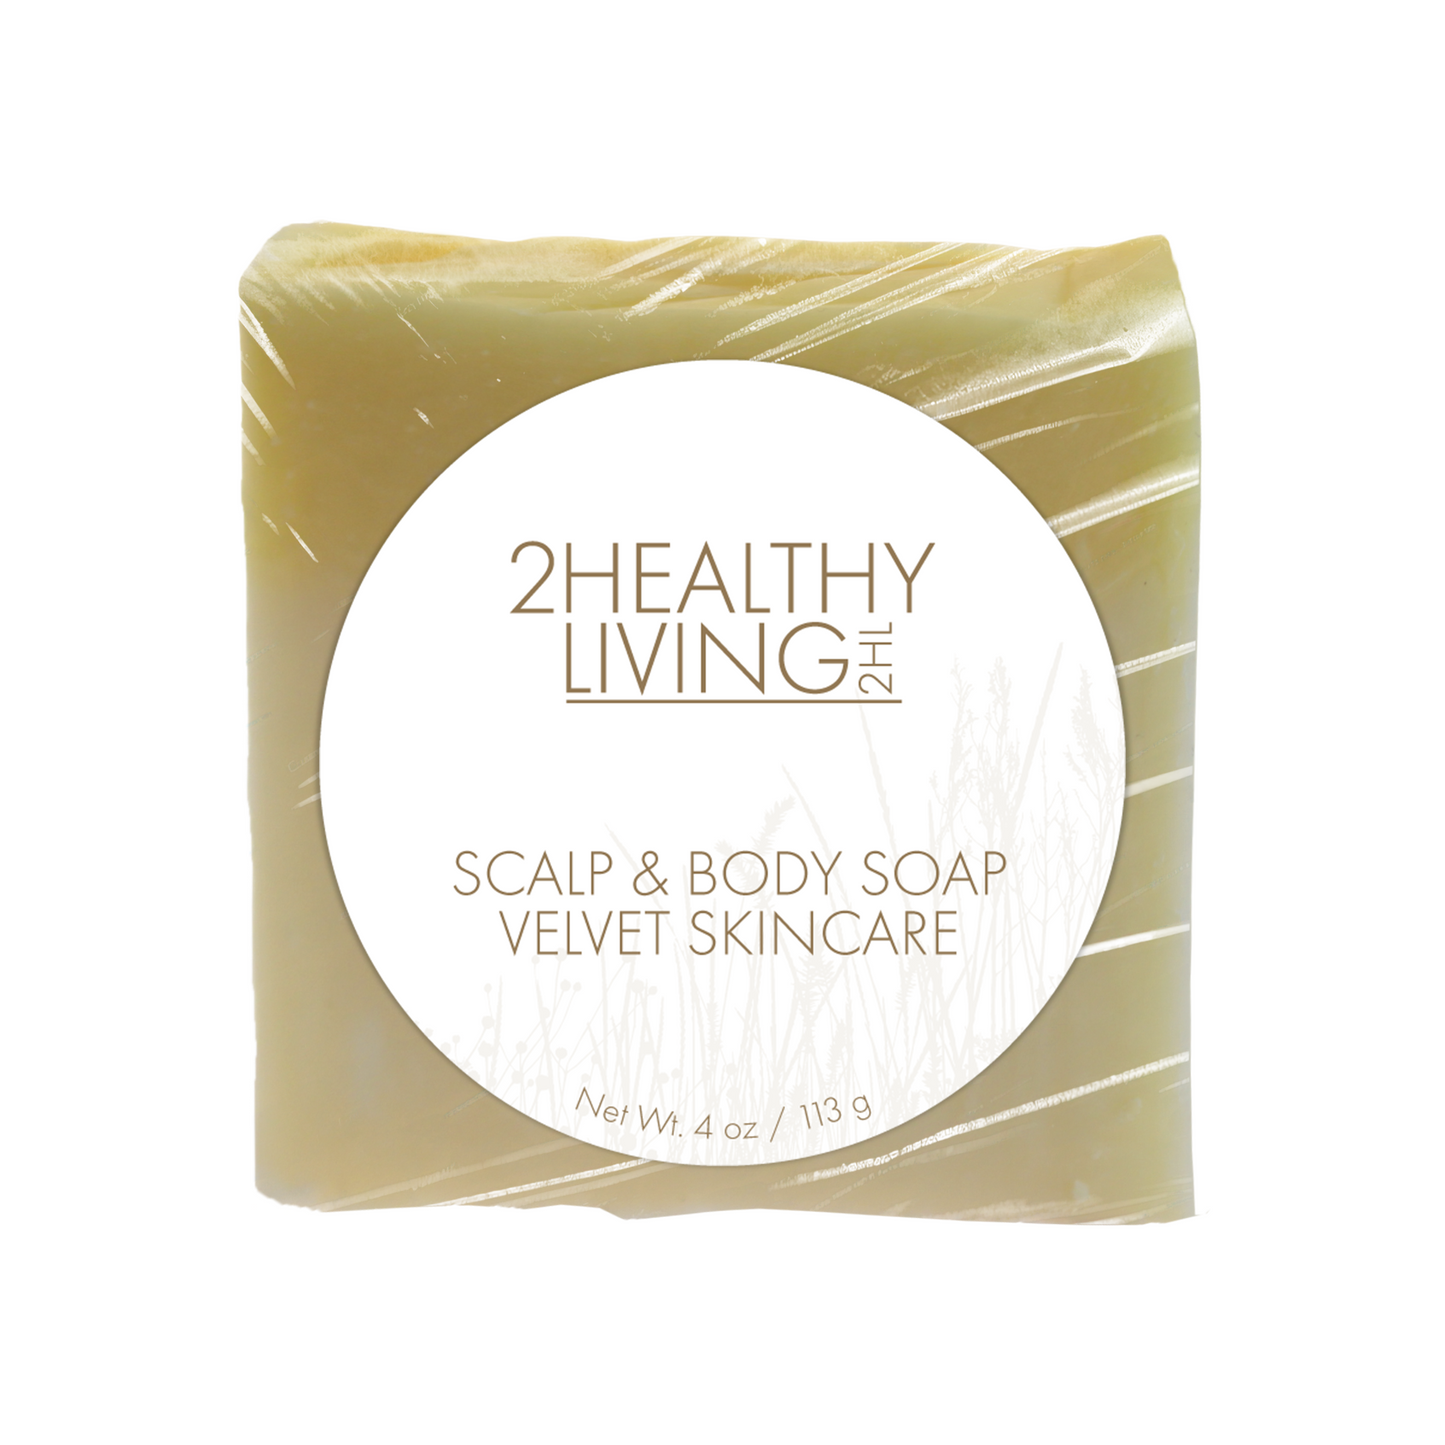 Scalp & Body Soap Velvet Skincare